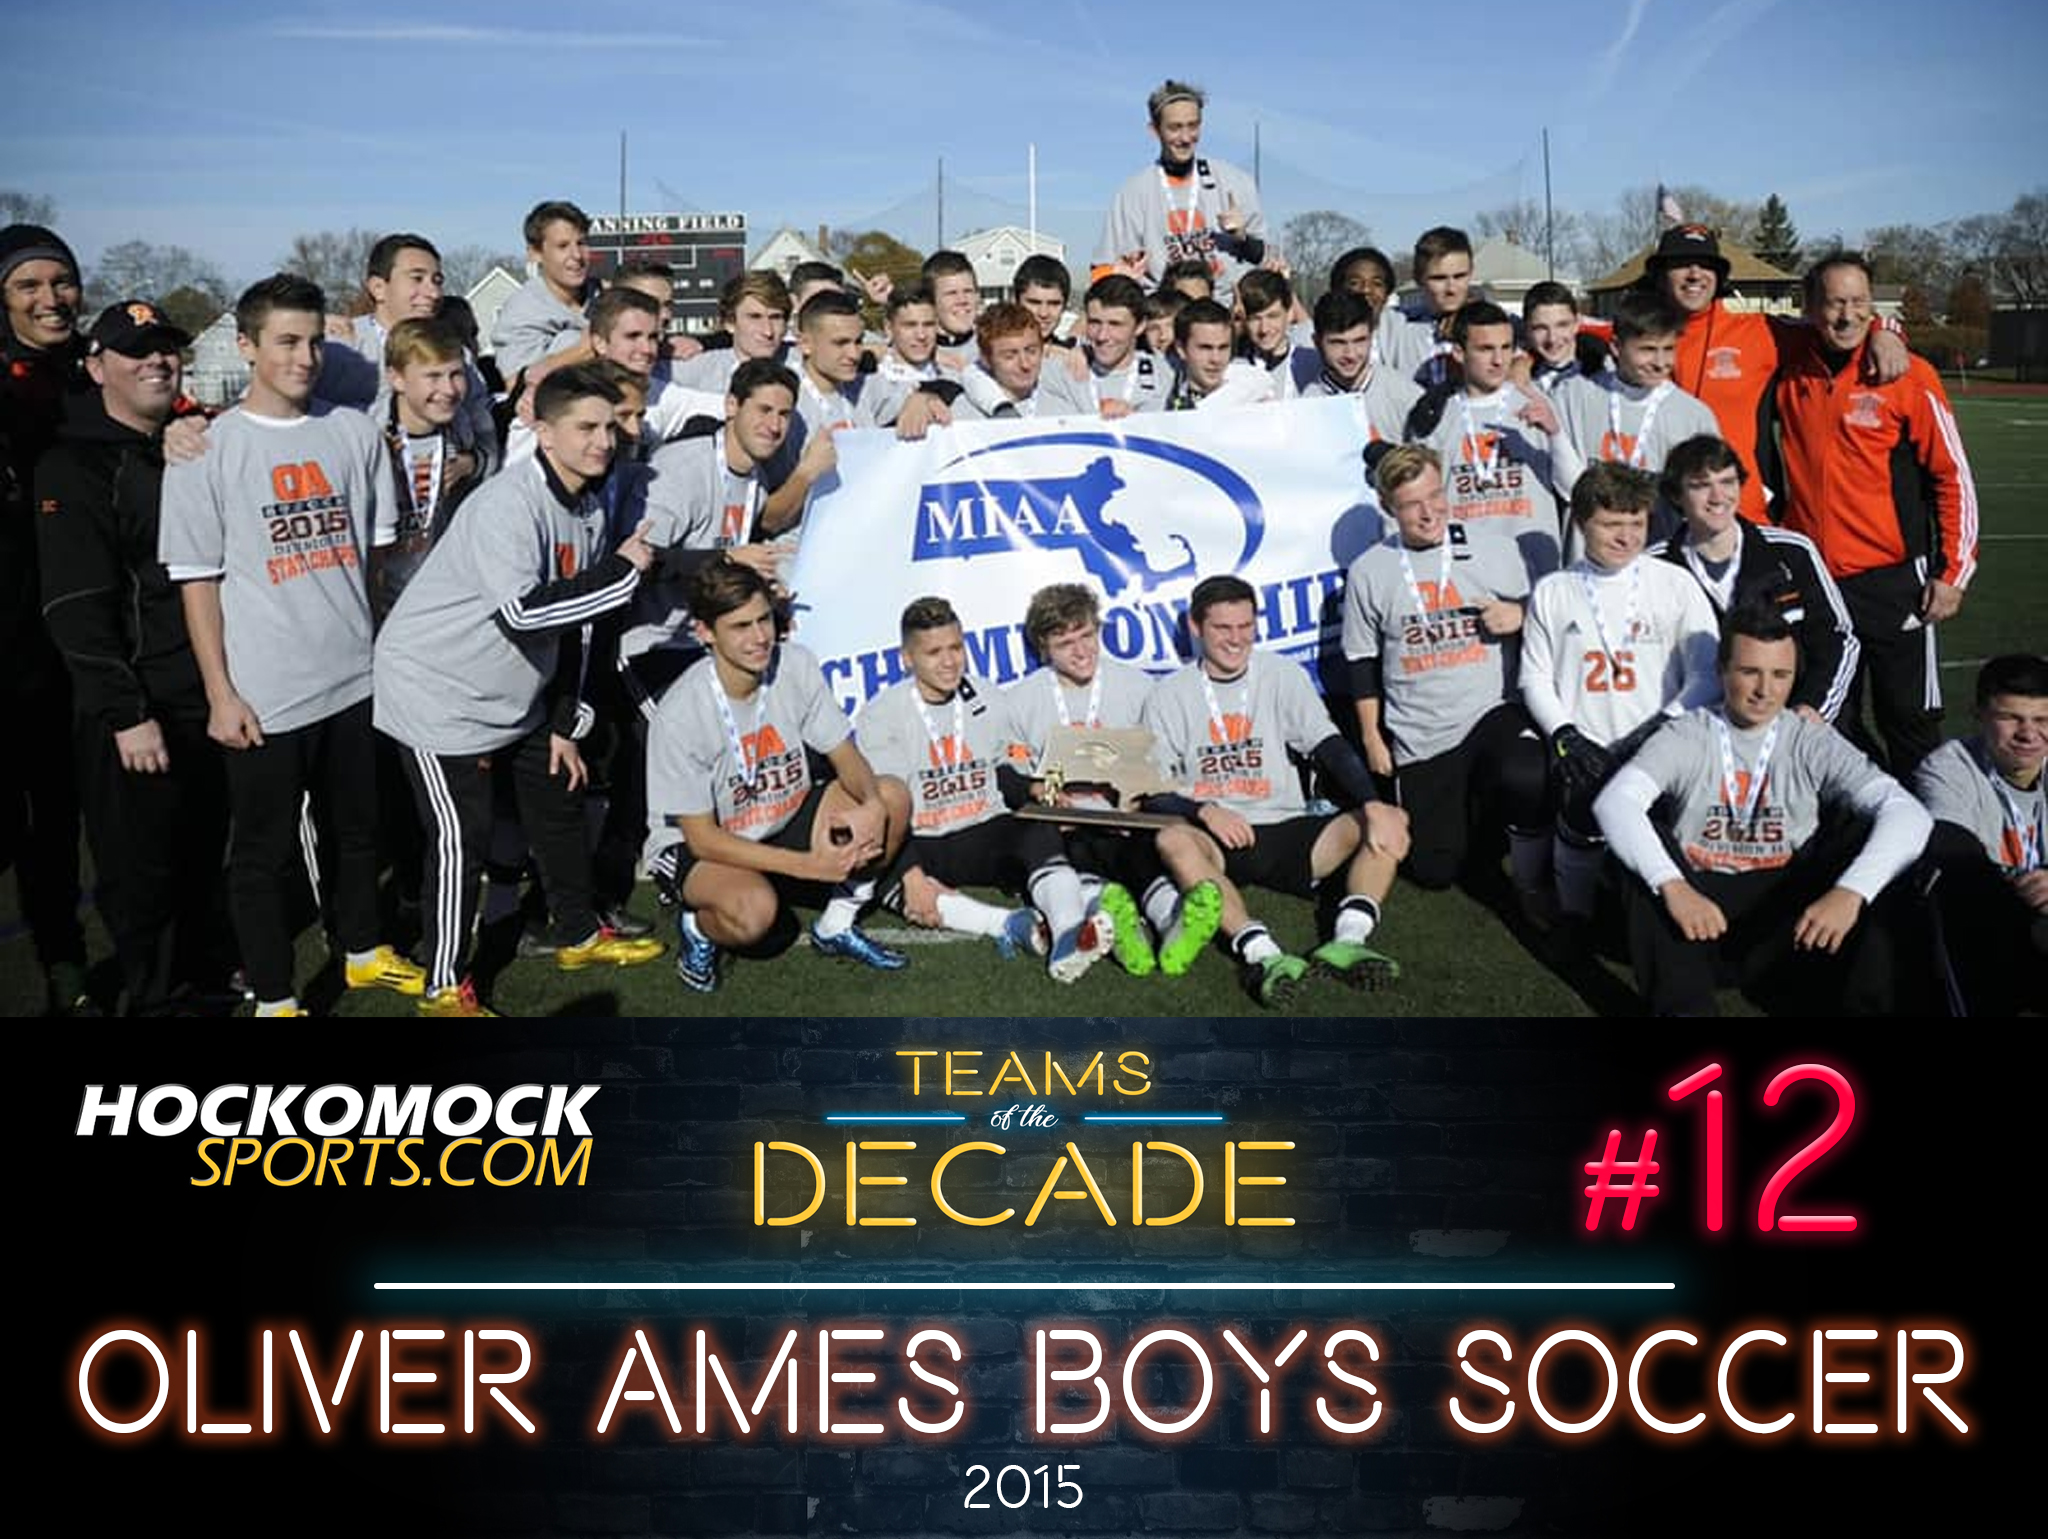 Oliver Ames boys soccer